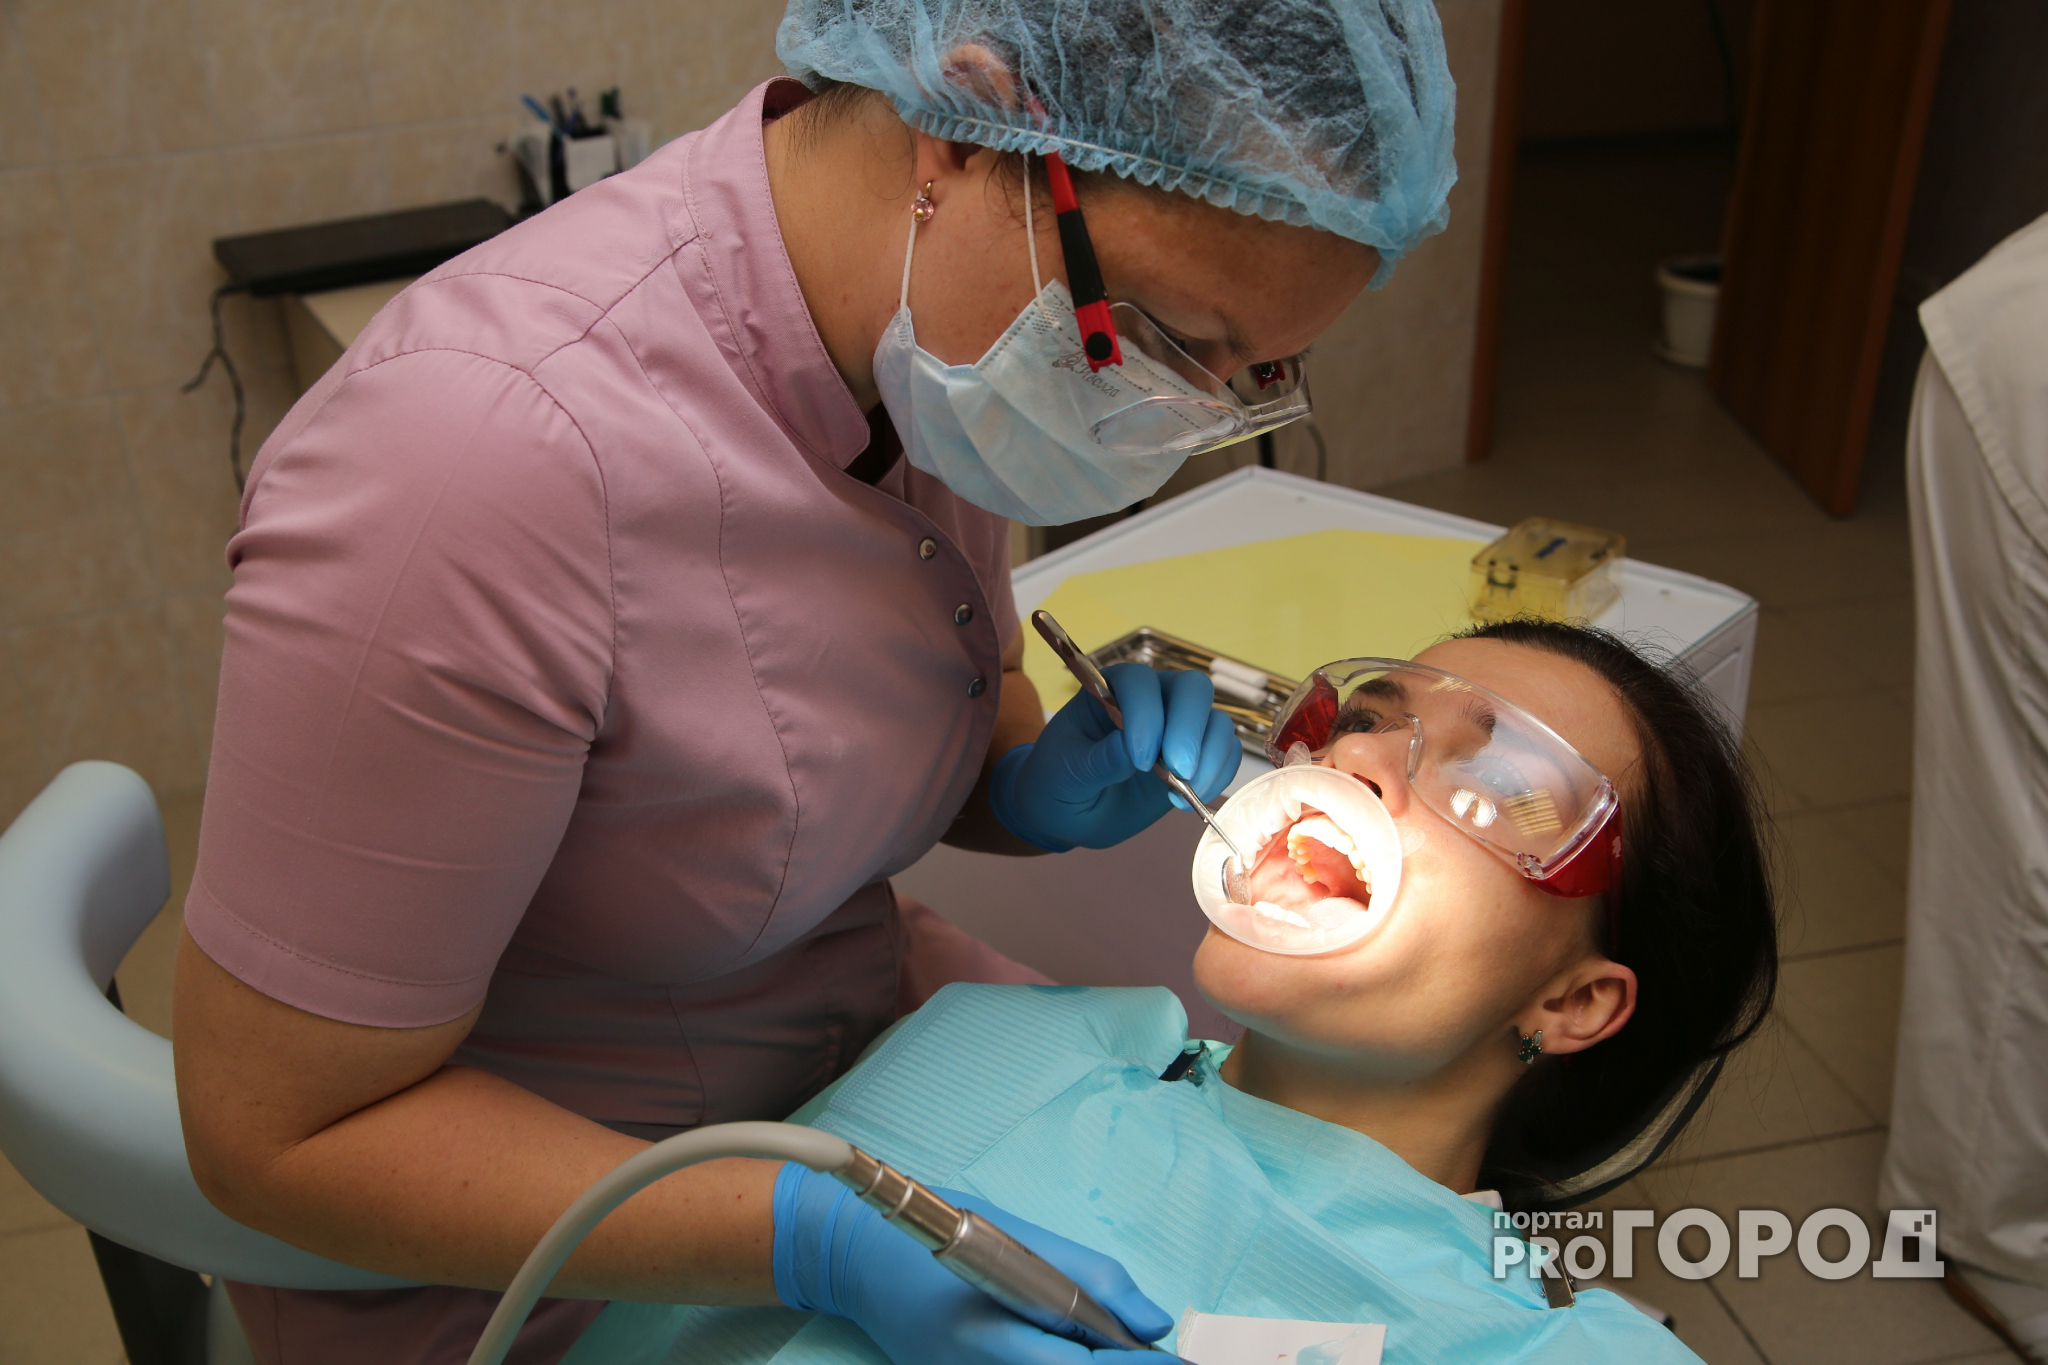 Нижегородке установили зубные импланты, которые бьют ее током